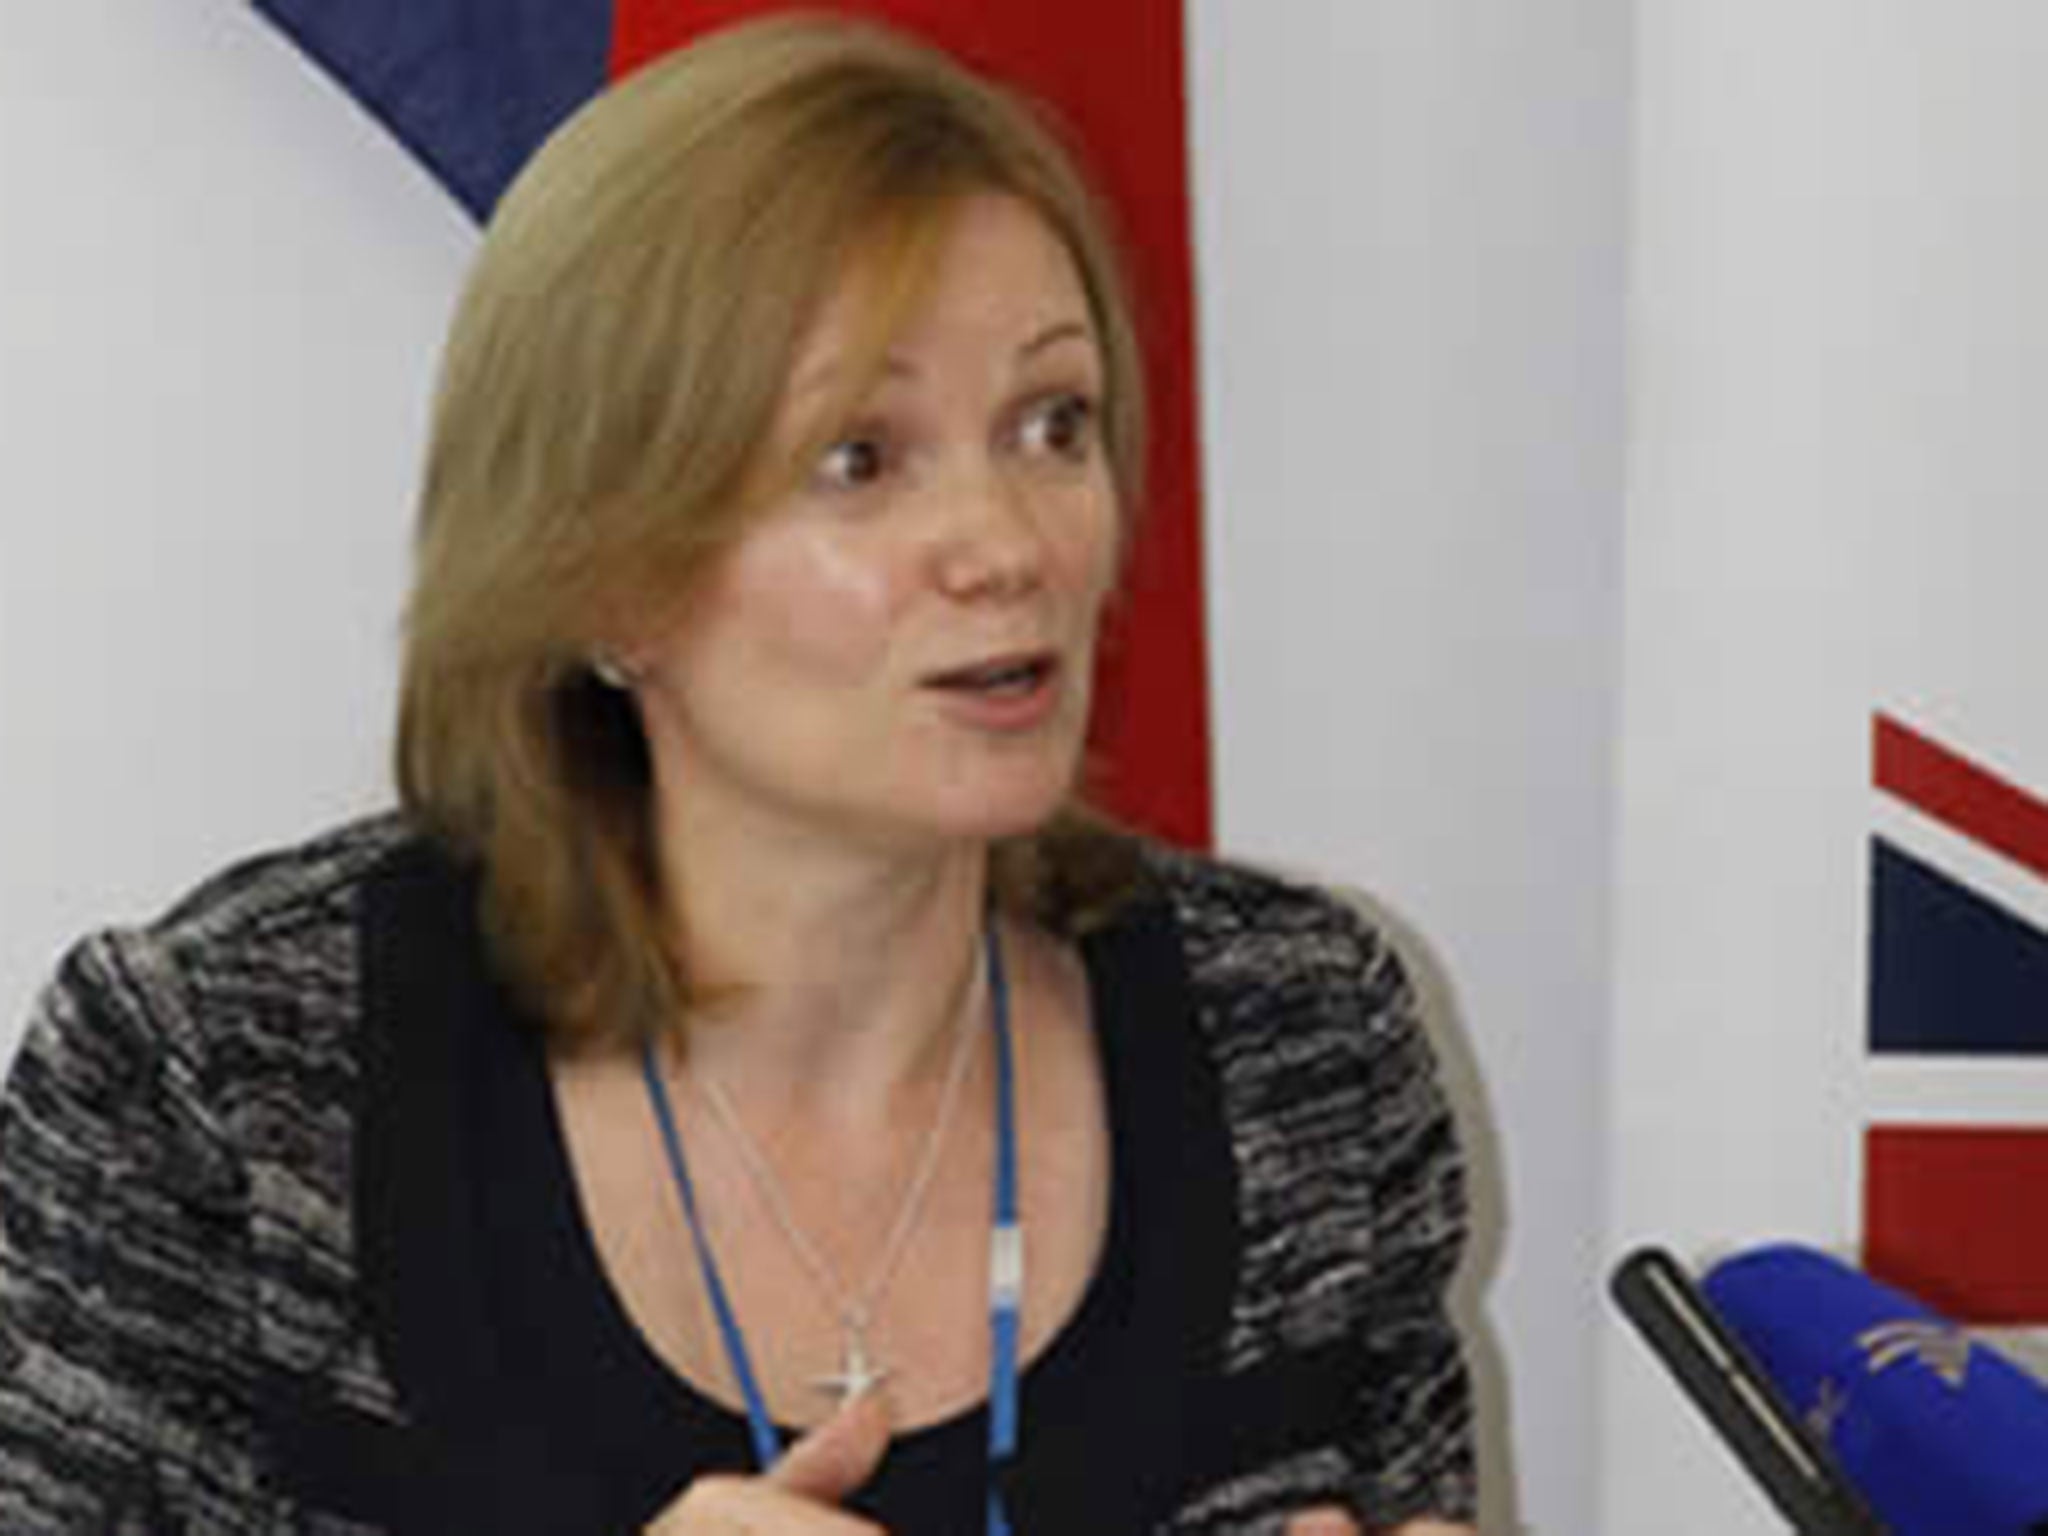 Deborah Bronnert was Britain’s ambassador to Zimbabwe between 2011 and 2014